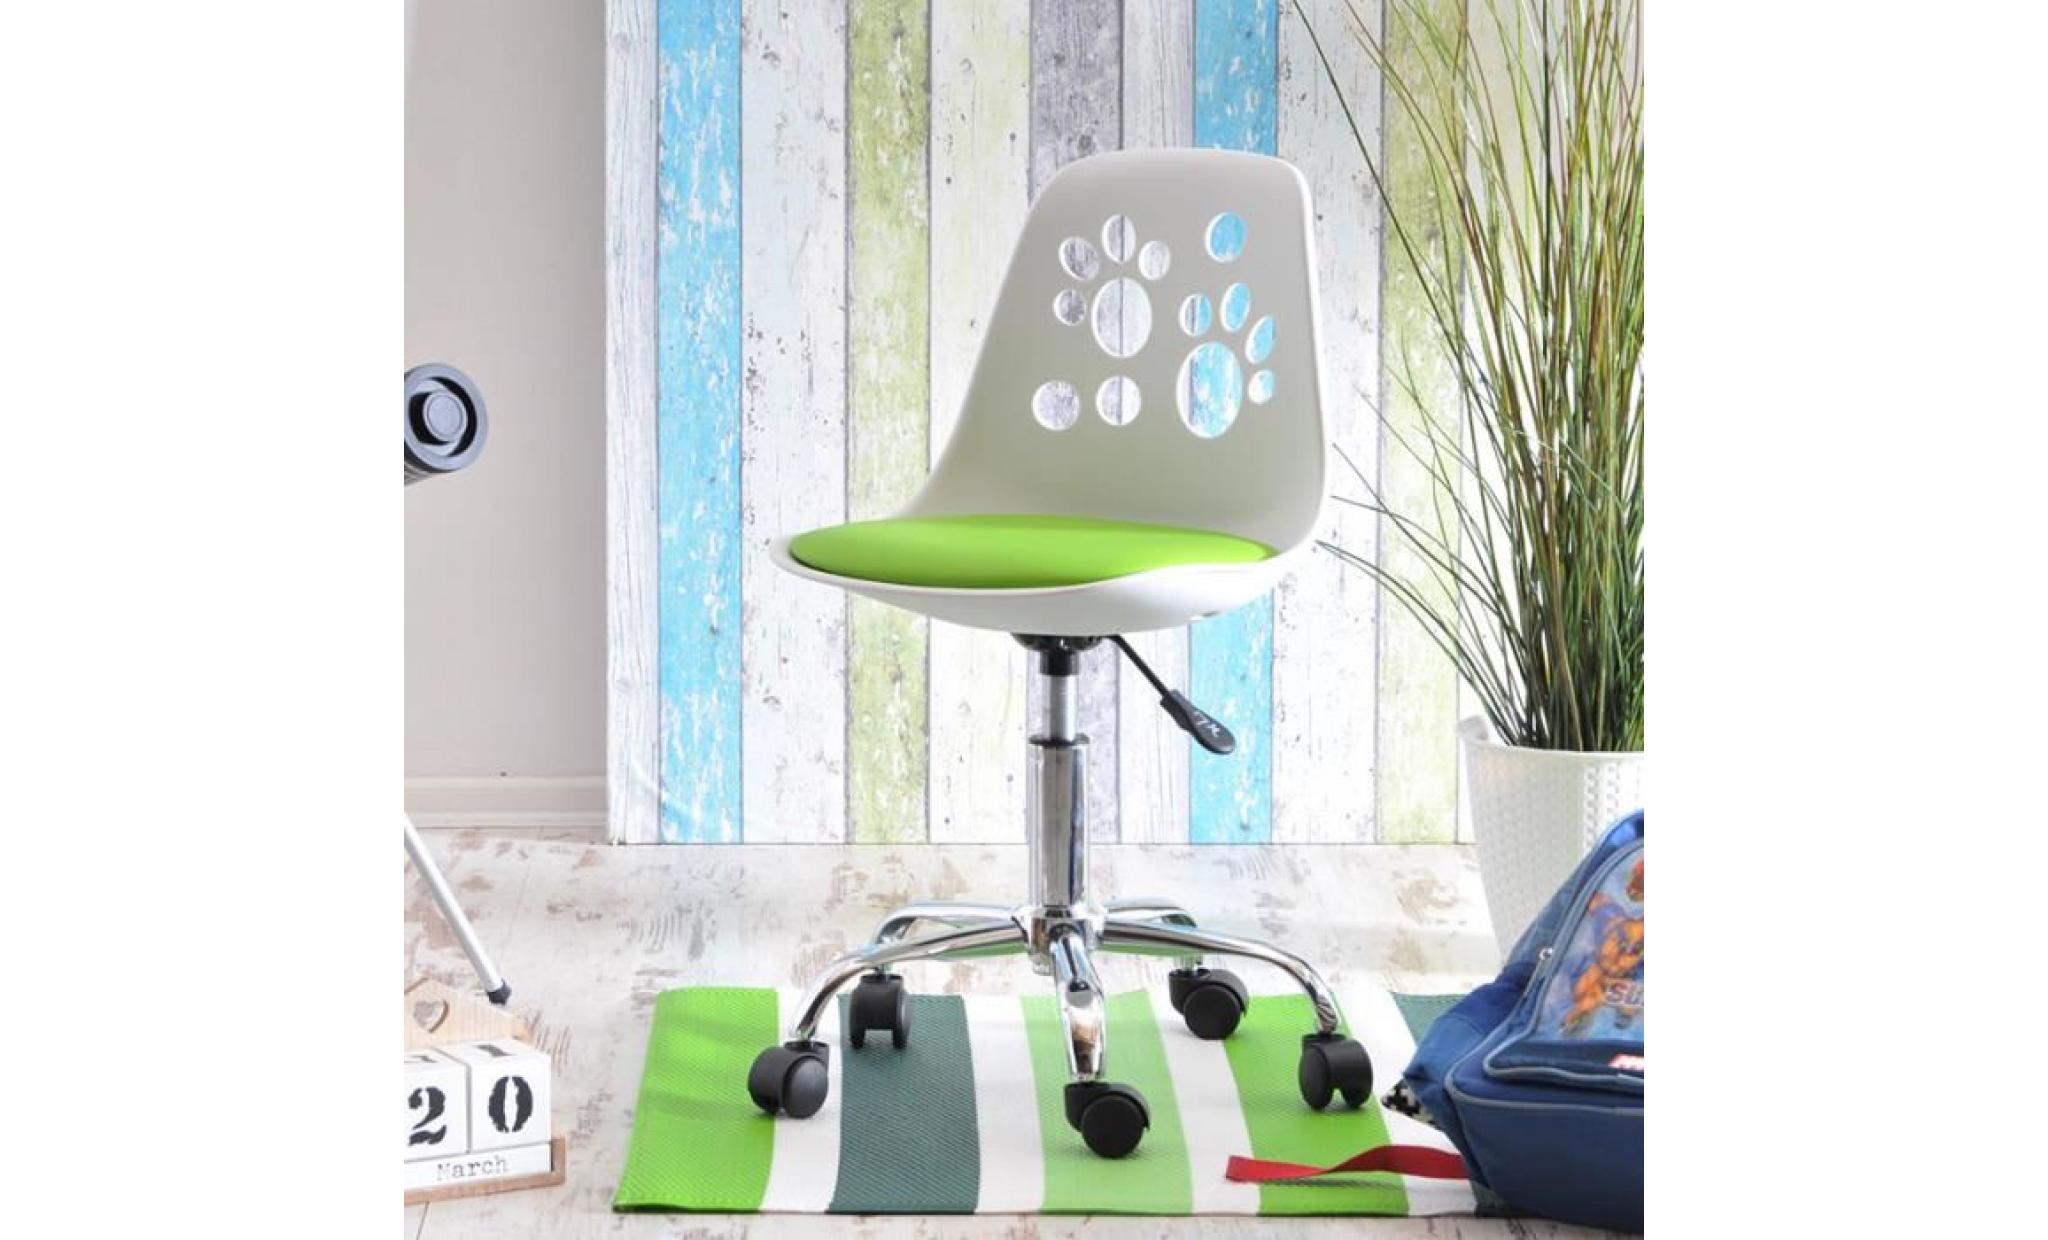 fauteuil d'enfant / chaise de bureau   foot   40 cm   citron vert   design moderne   réglable   pivotant pas cher